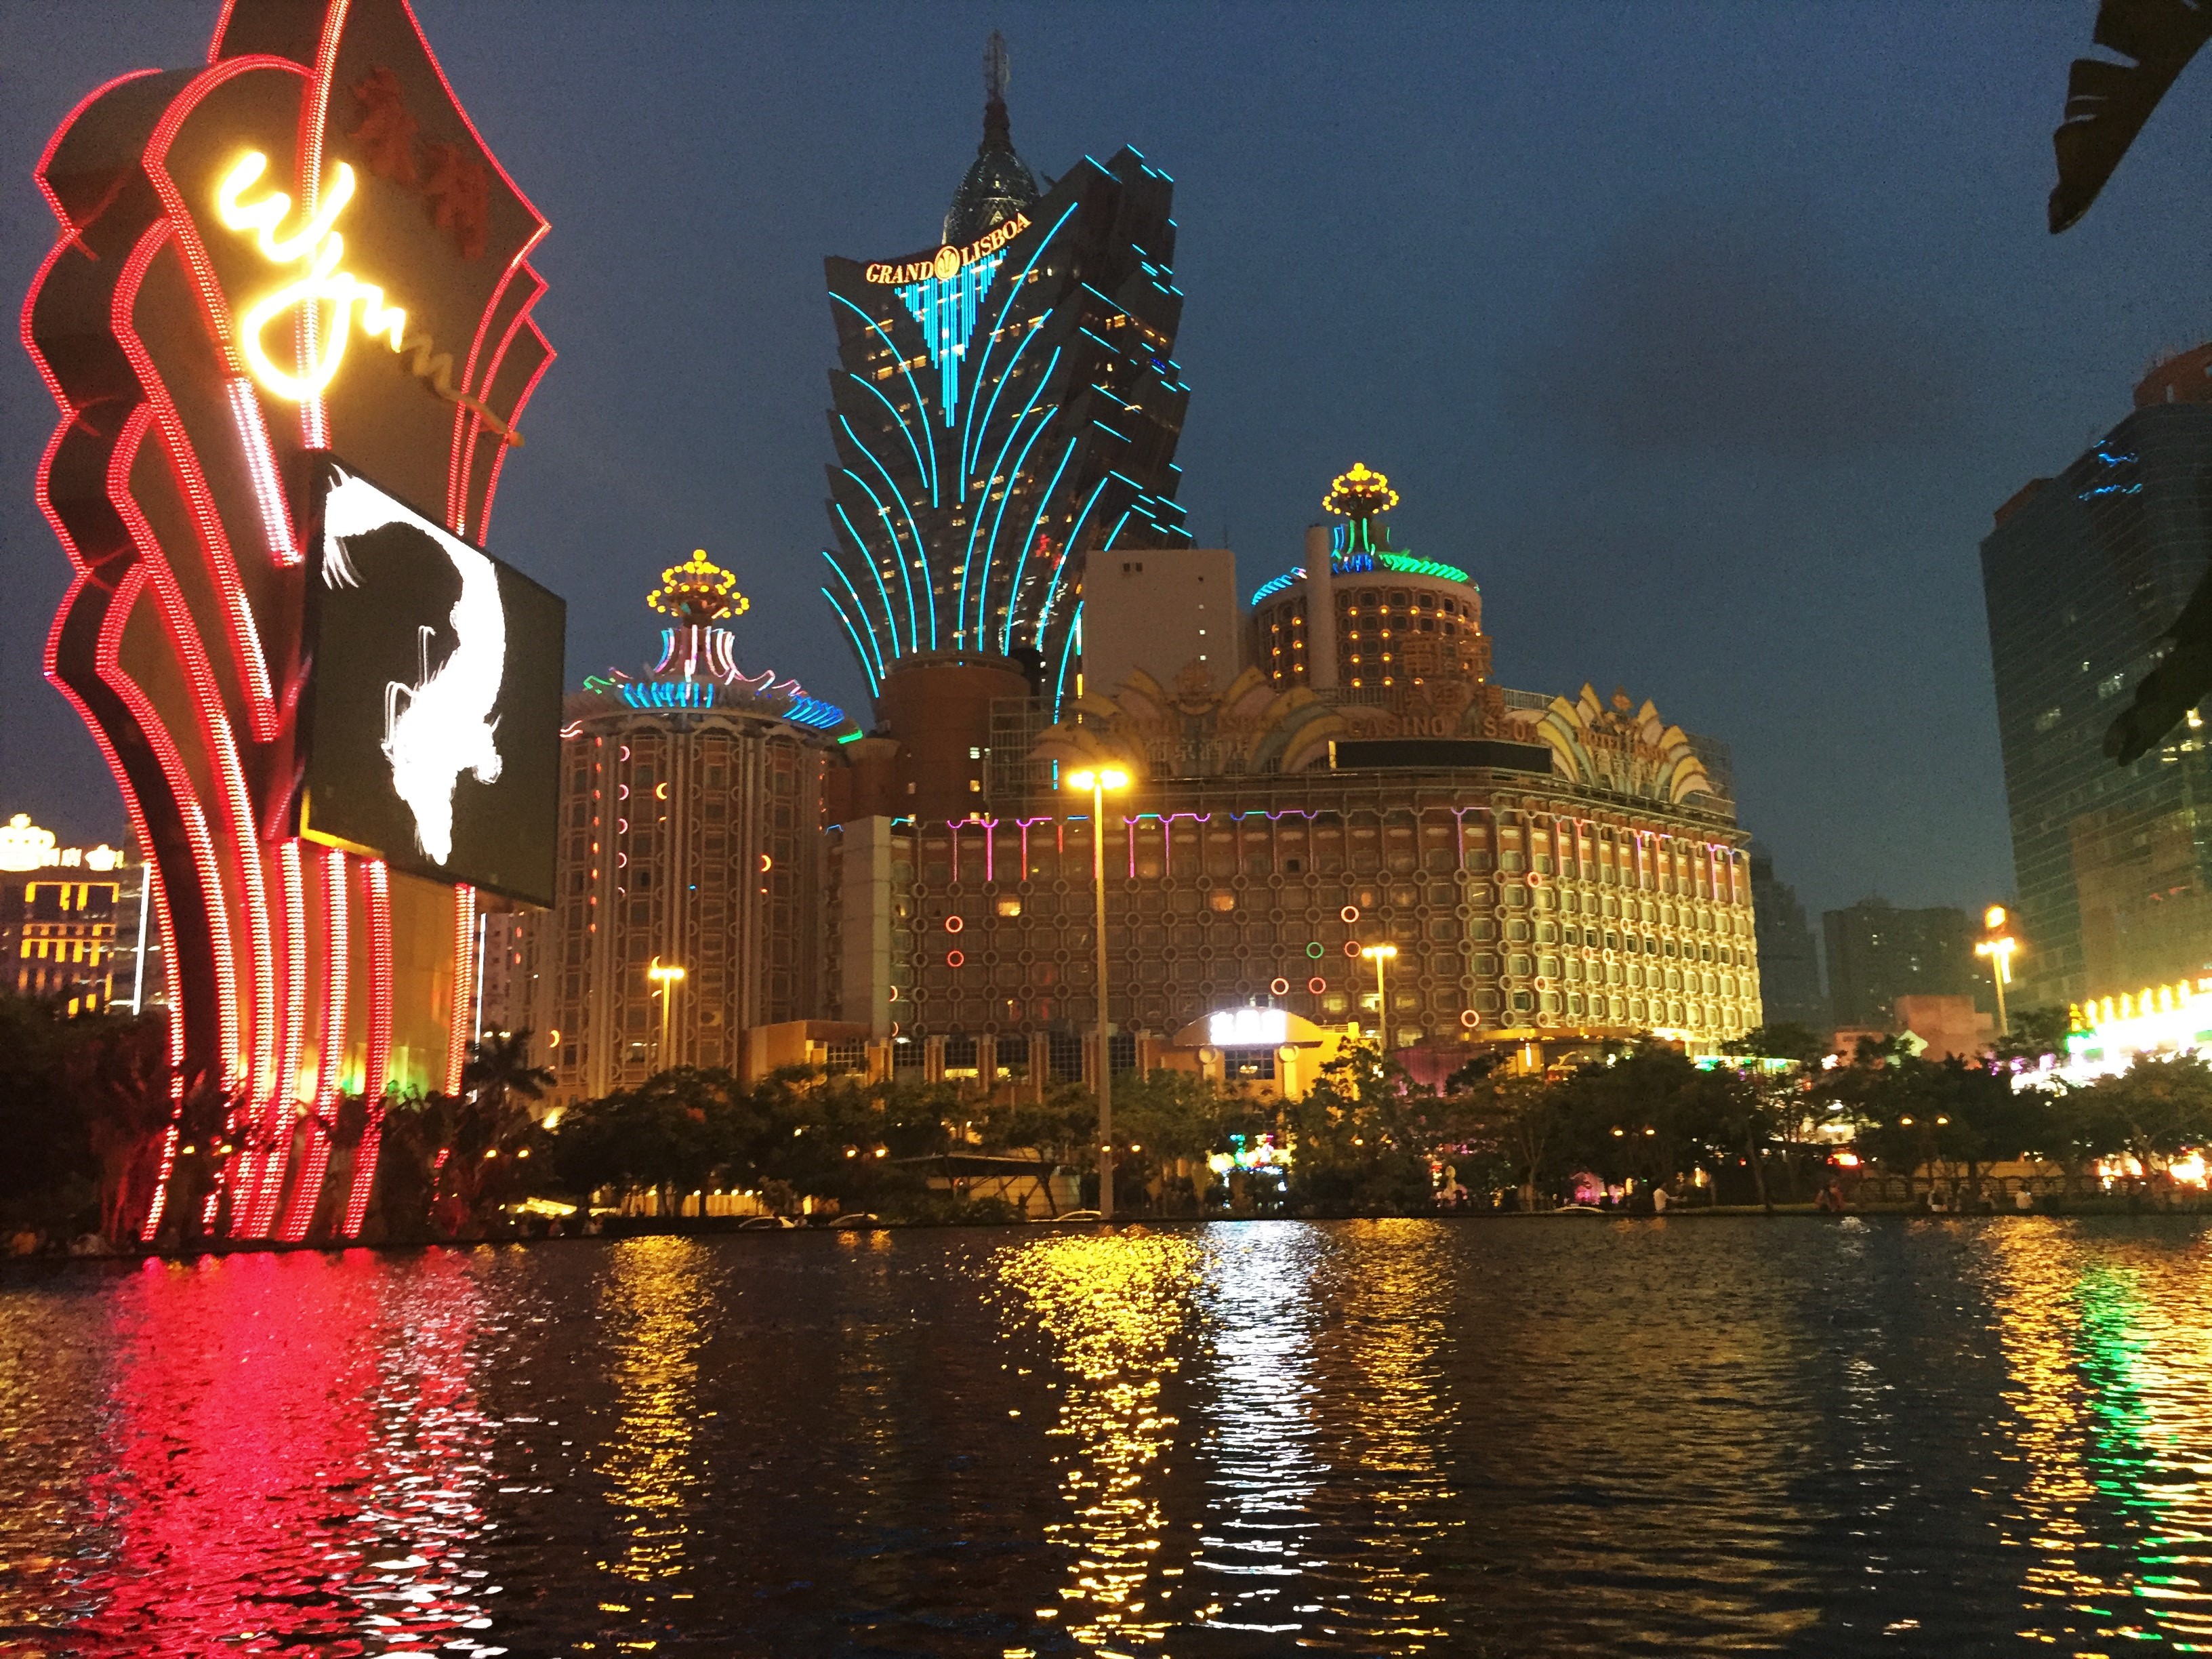 Macau by night